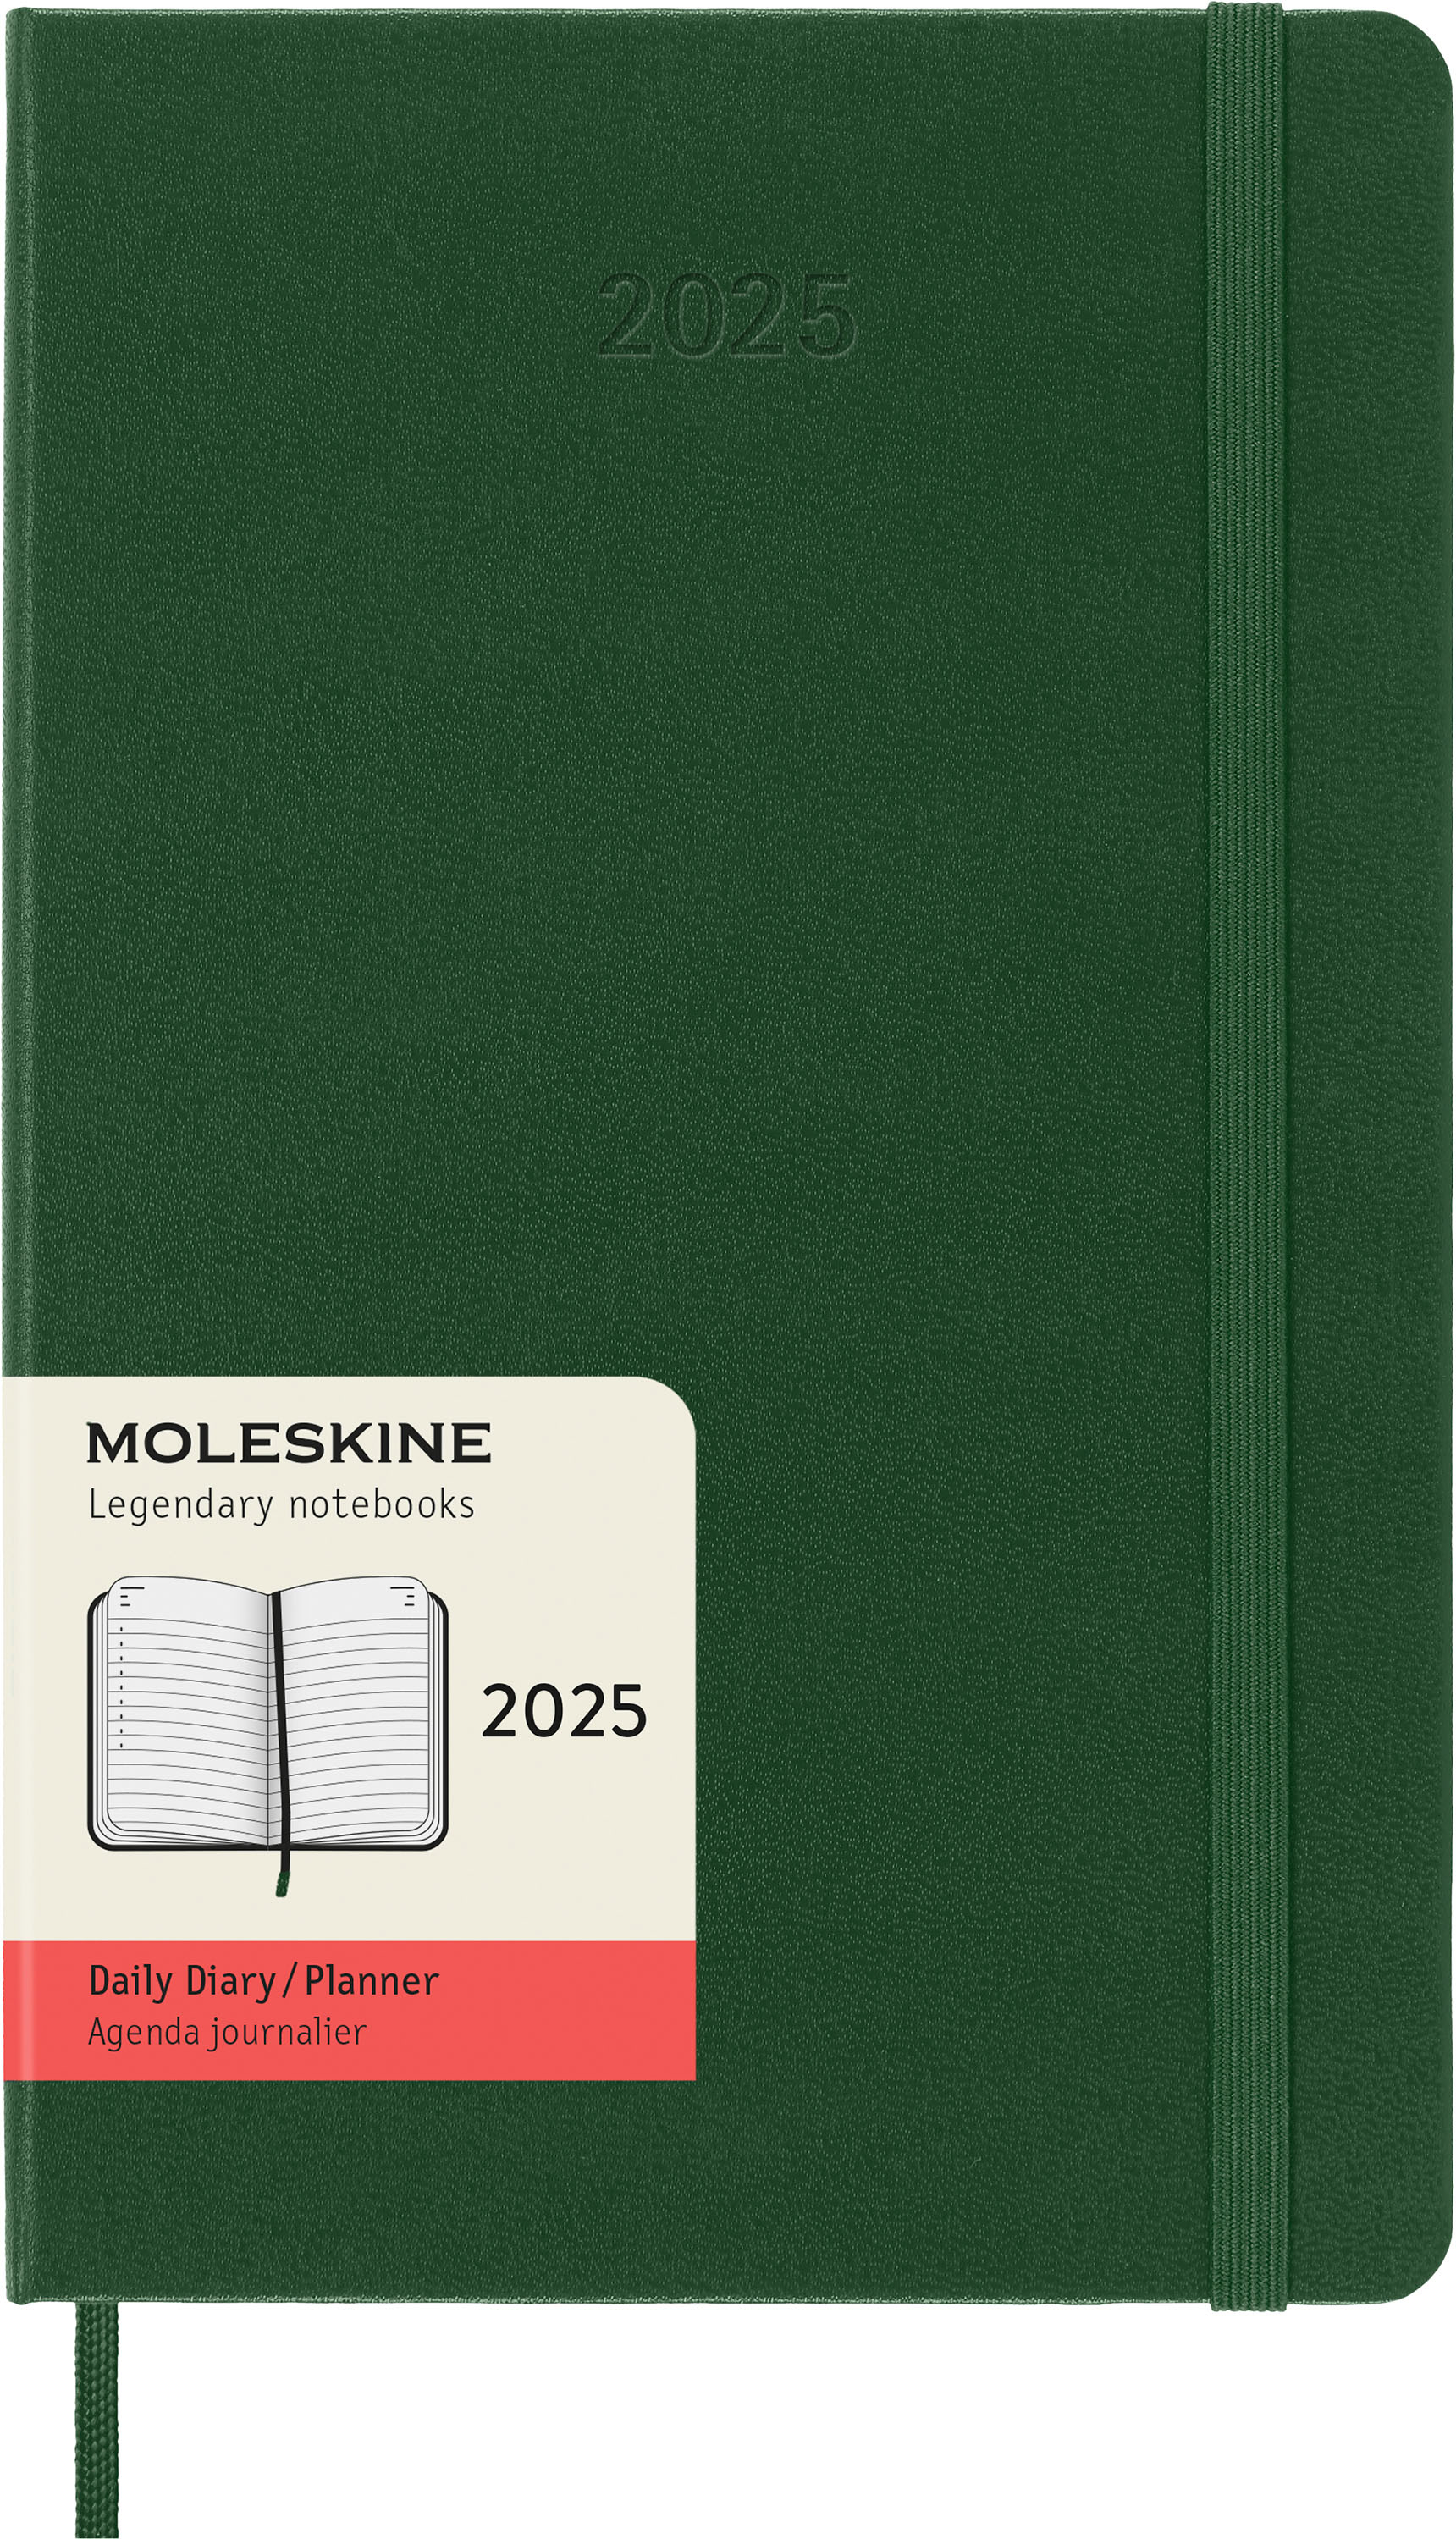 MOLESKINE Agenda Classic Large 2025 056999270766 1J/1P vert myrte HC 13x21cm 1J/1P vert myrte HC 13x